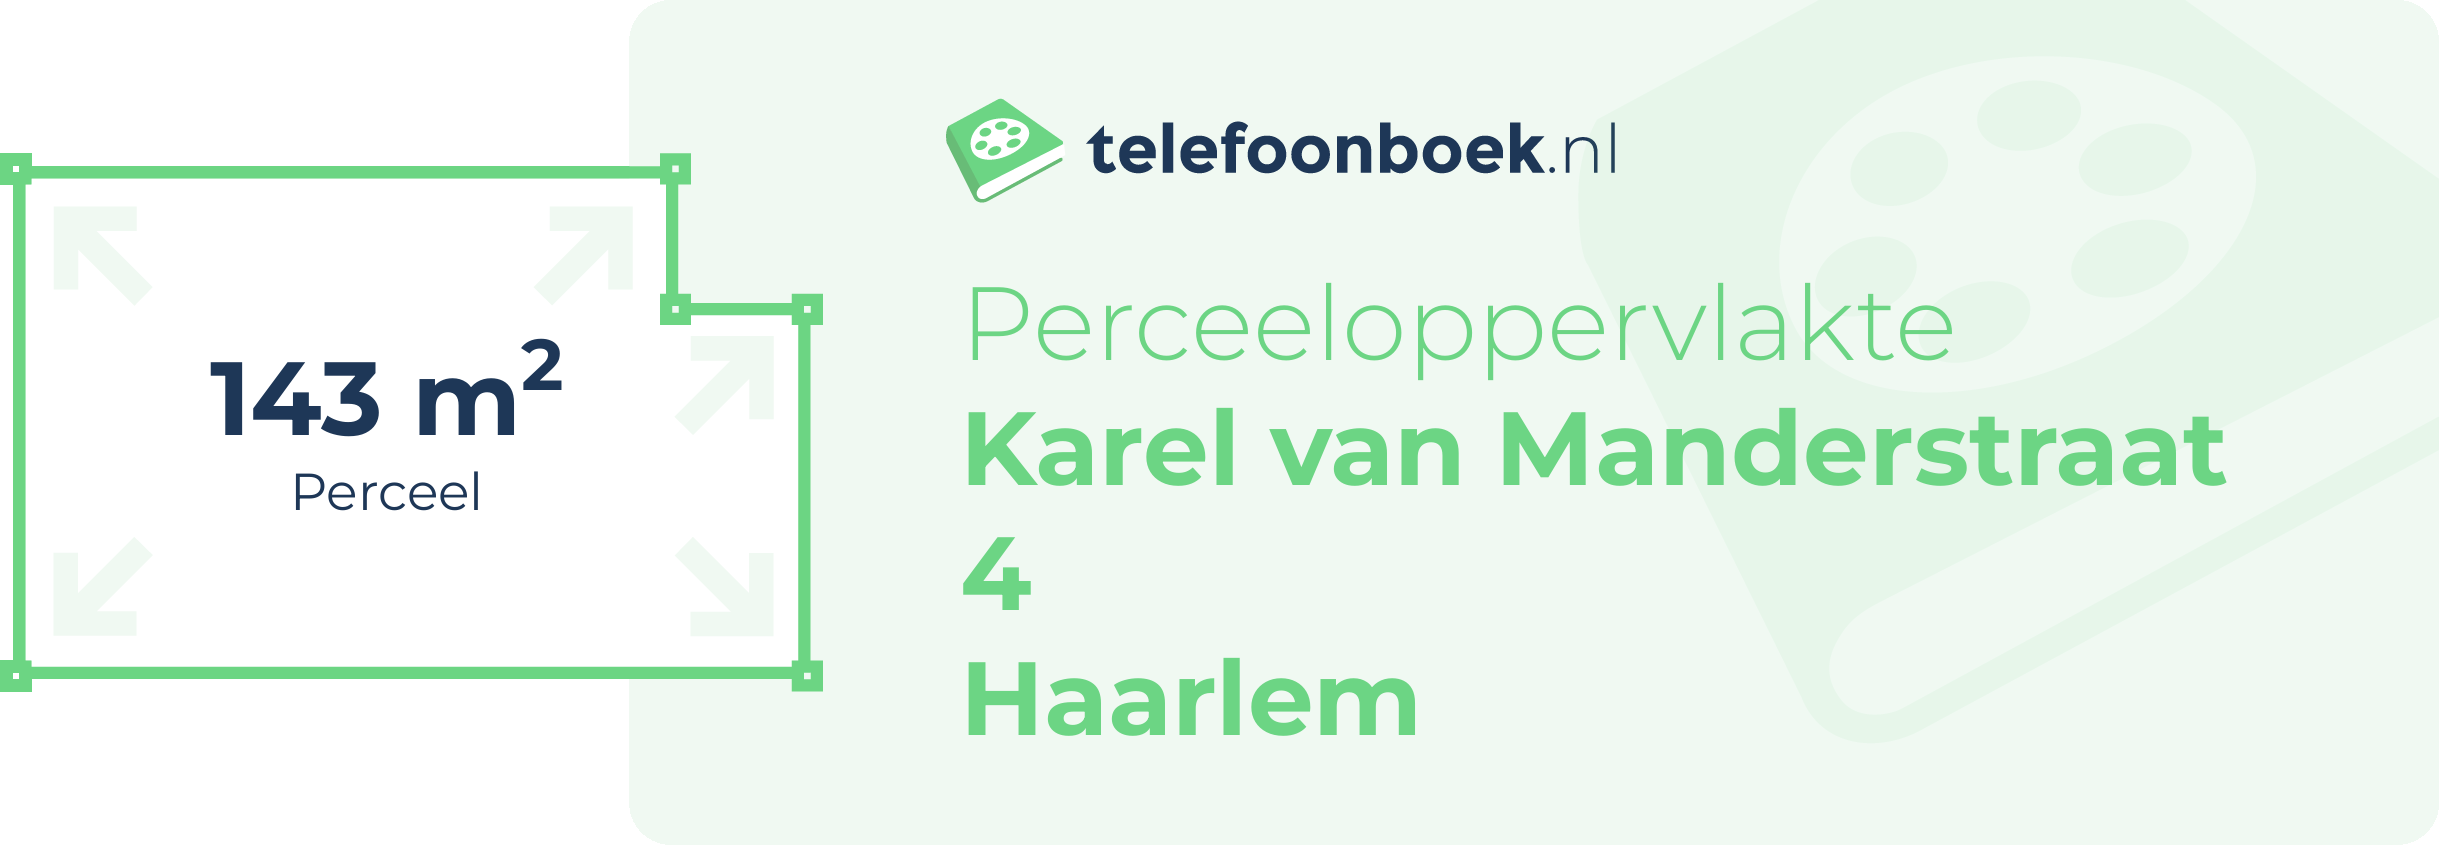 Perceeloppervlakte Karel Van Manderstraat 4 Haarlem